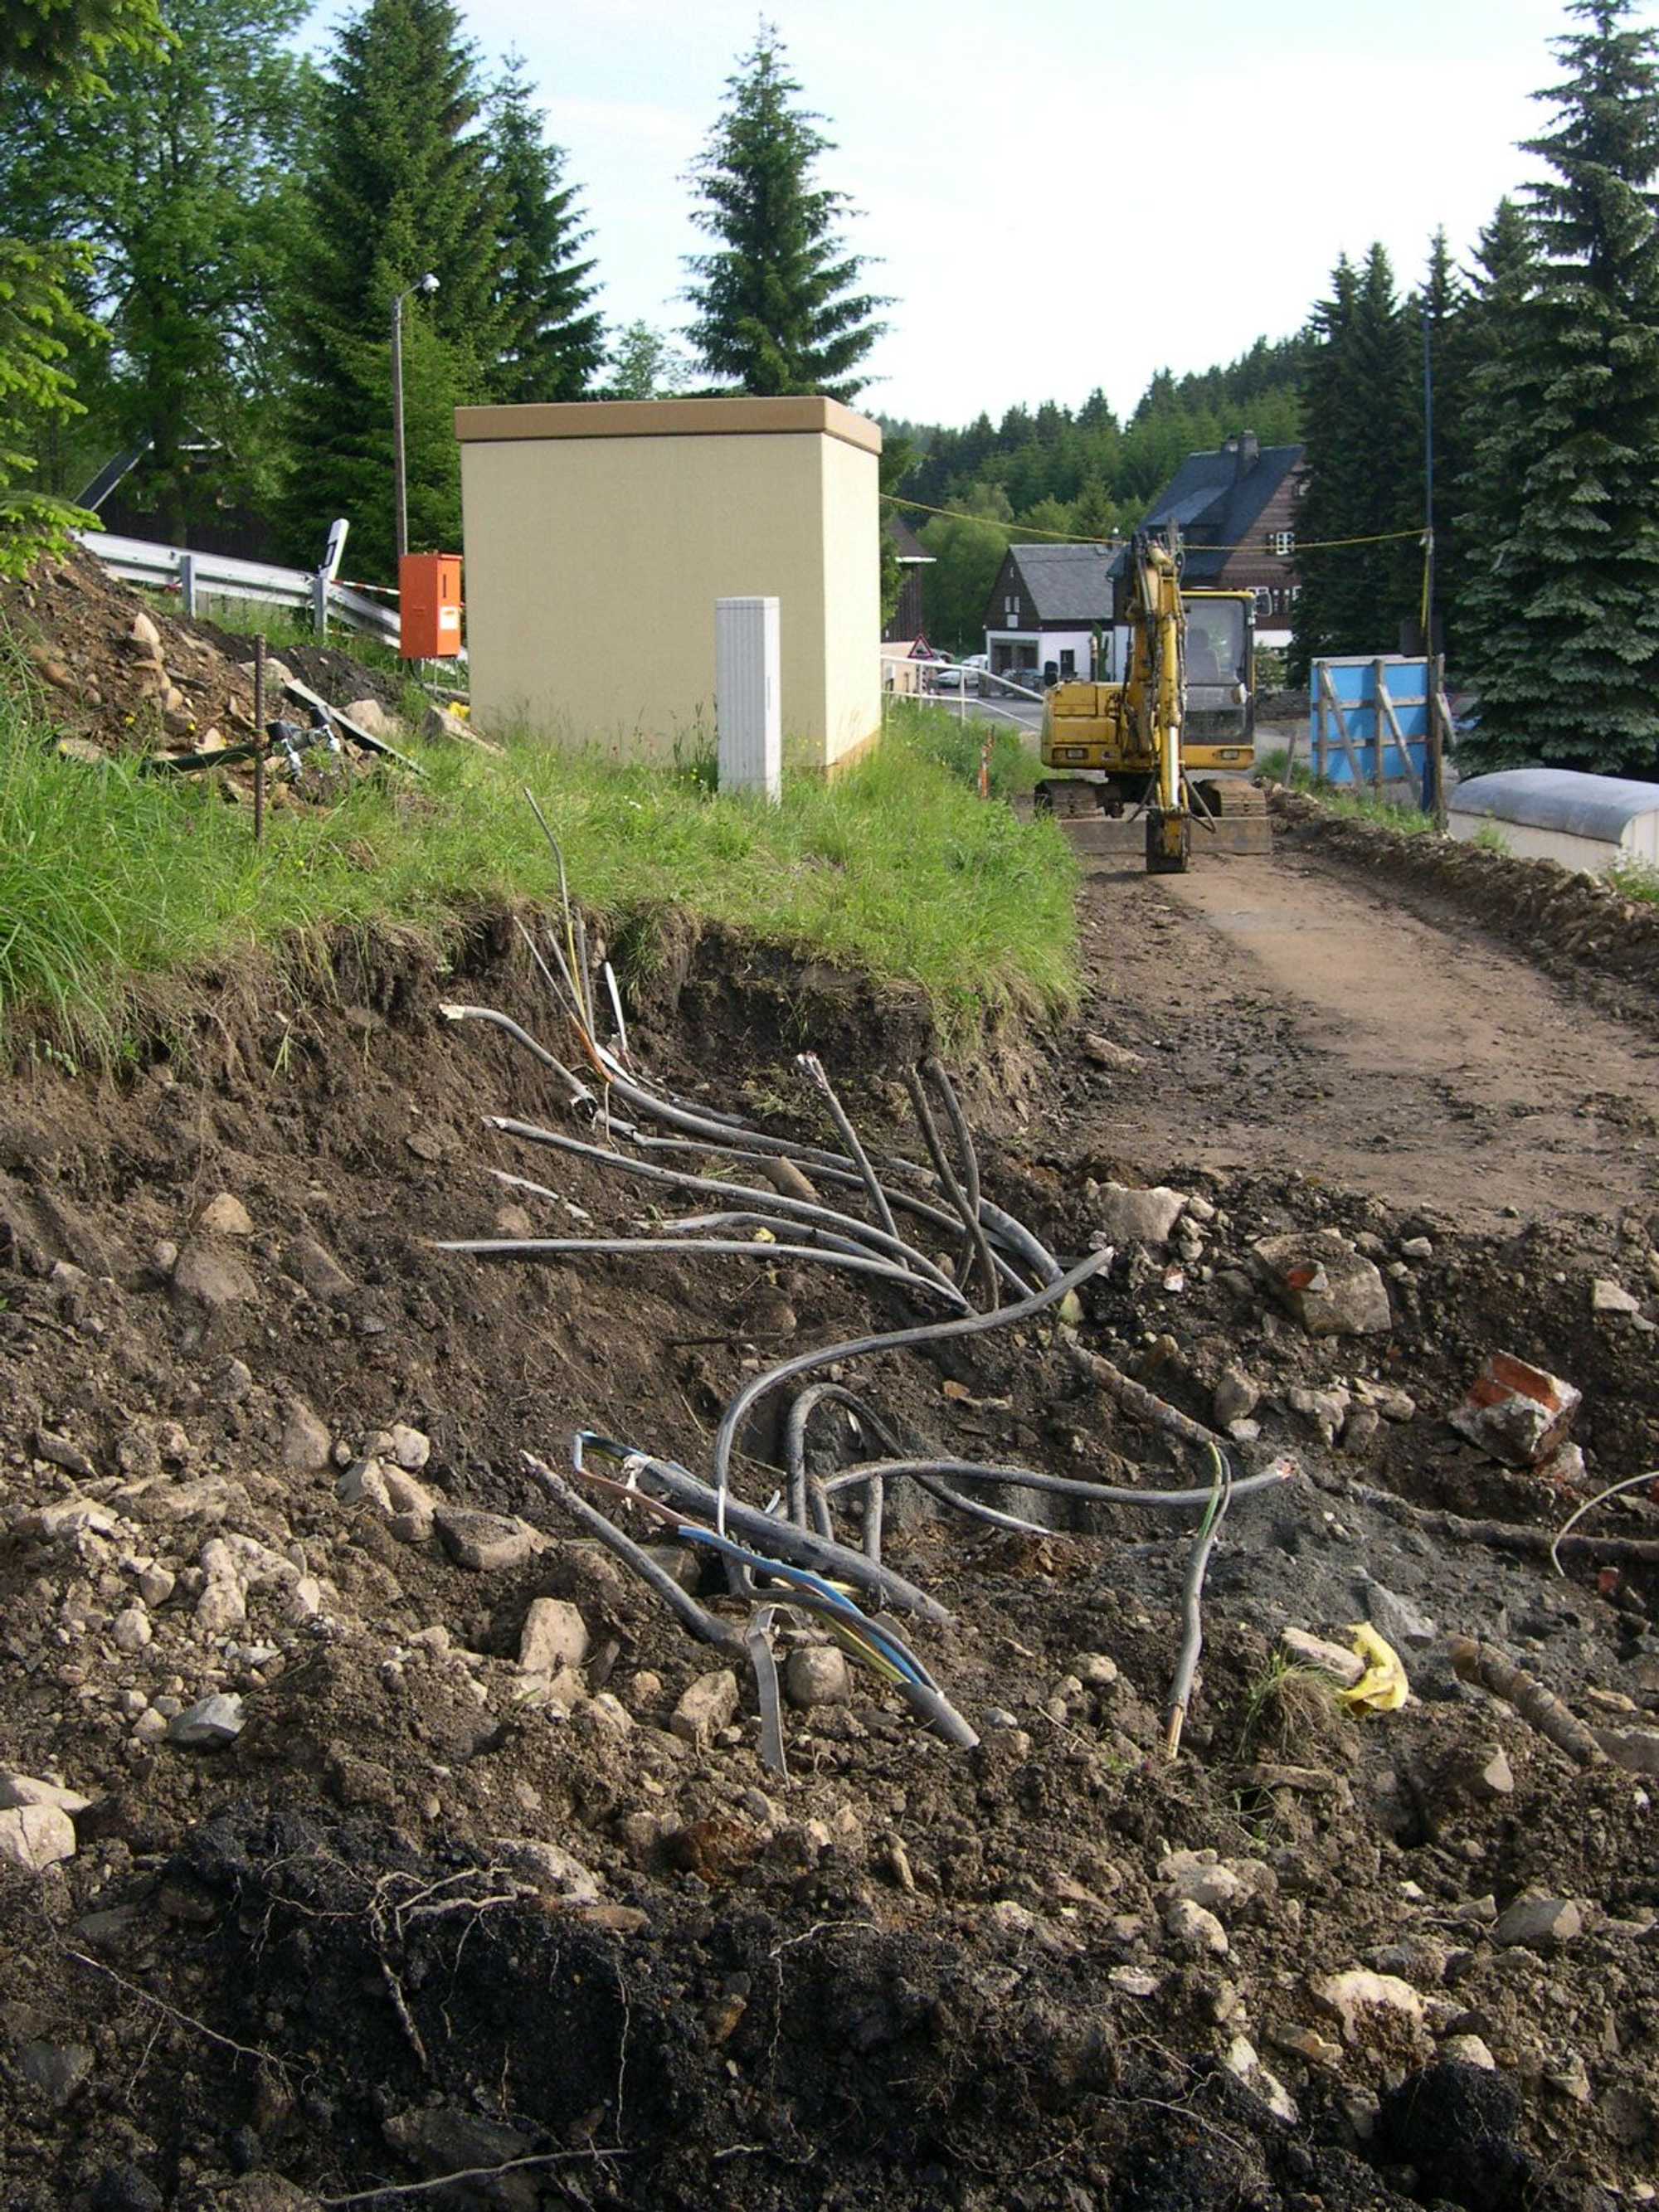 Wegen dieser unerwarteten Kabel konnte erst nach Neuverlegung der Energieversorgungsleitungen die Geländebereinigung für das Mehrzweckgebäude beginnen.